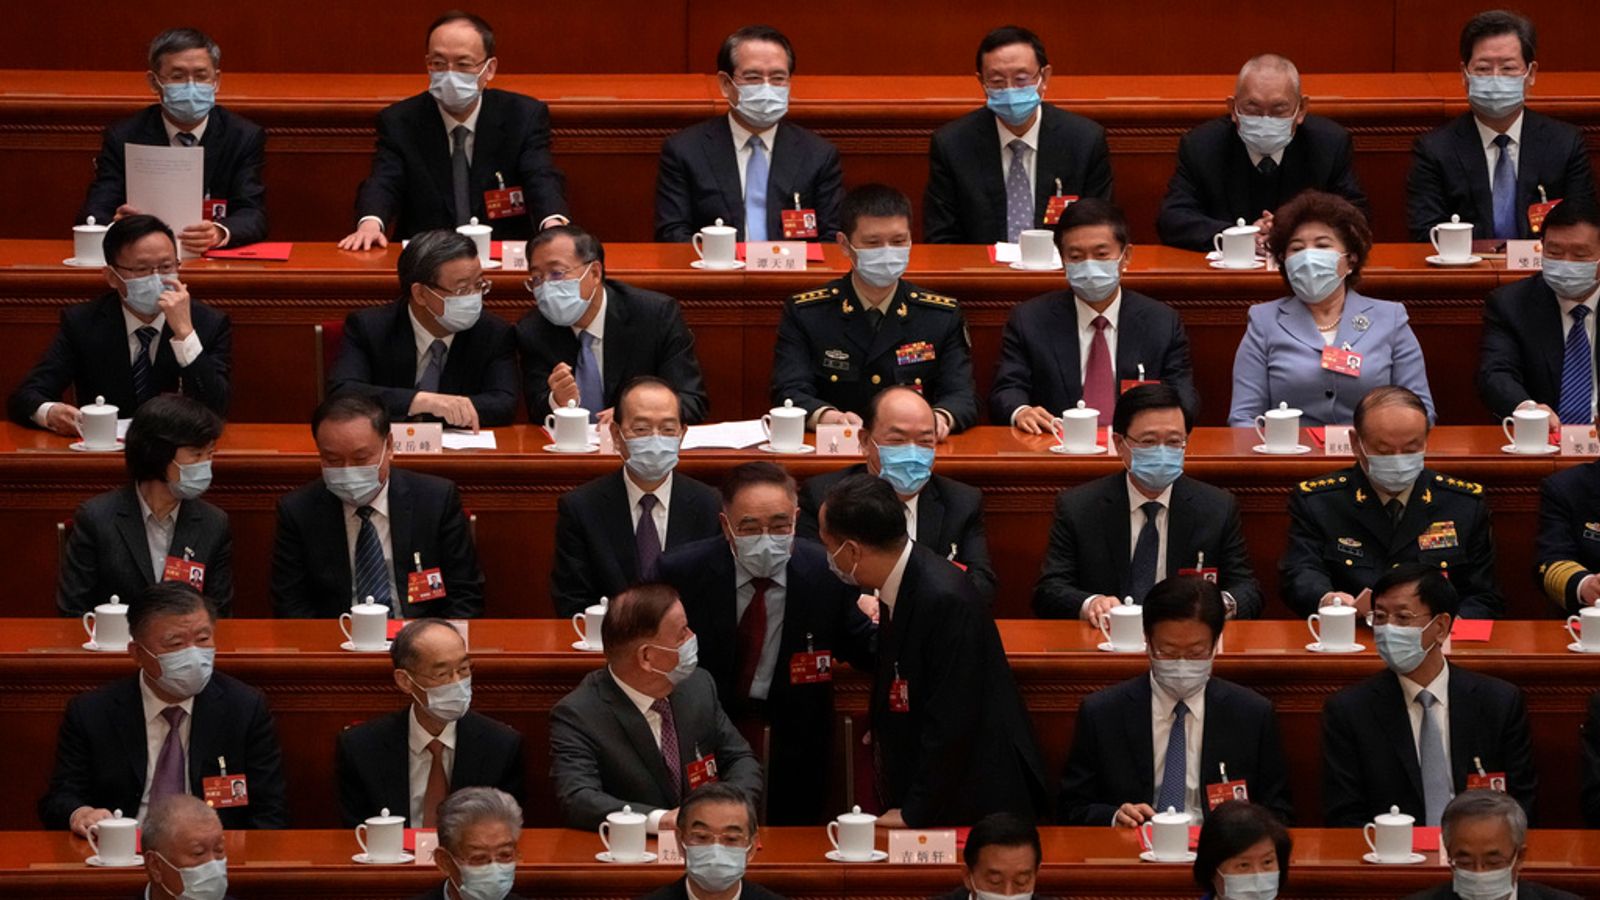 Chiny: eskalacja retoryki przez prezydenta Xi Jinpinga jest celowa — a rysowanie linii bojowych przyspiesza |  wiadomości ze świata